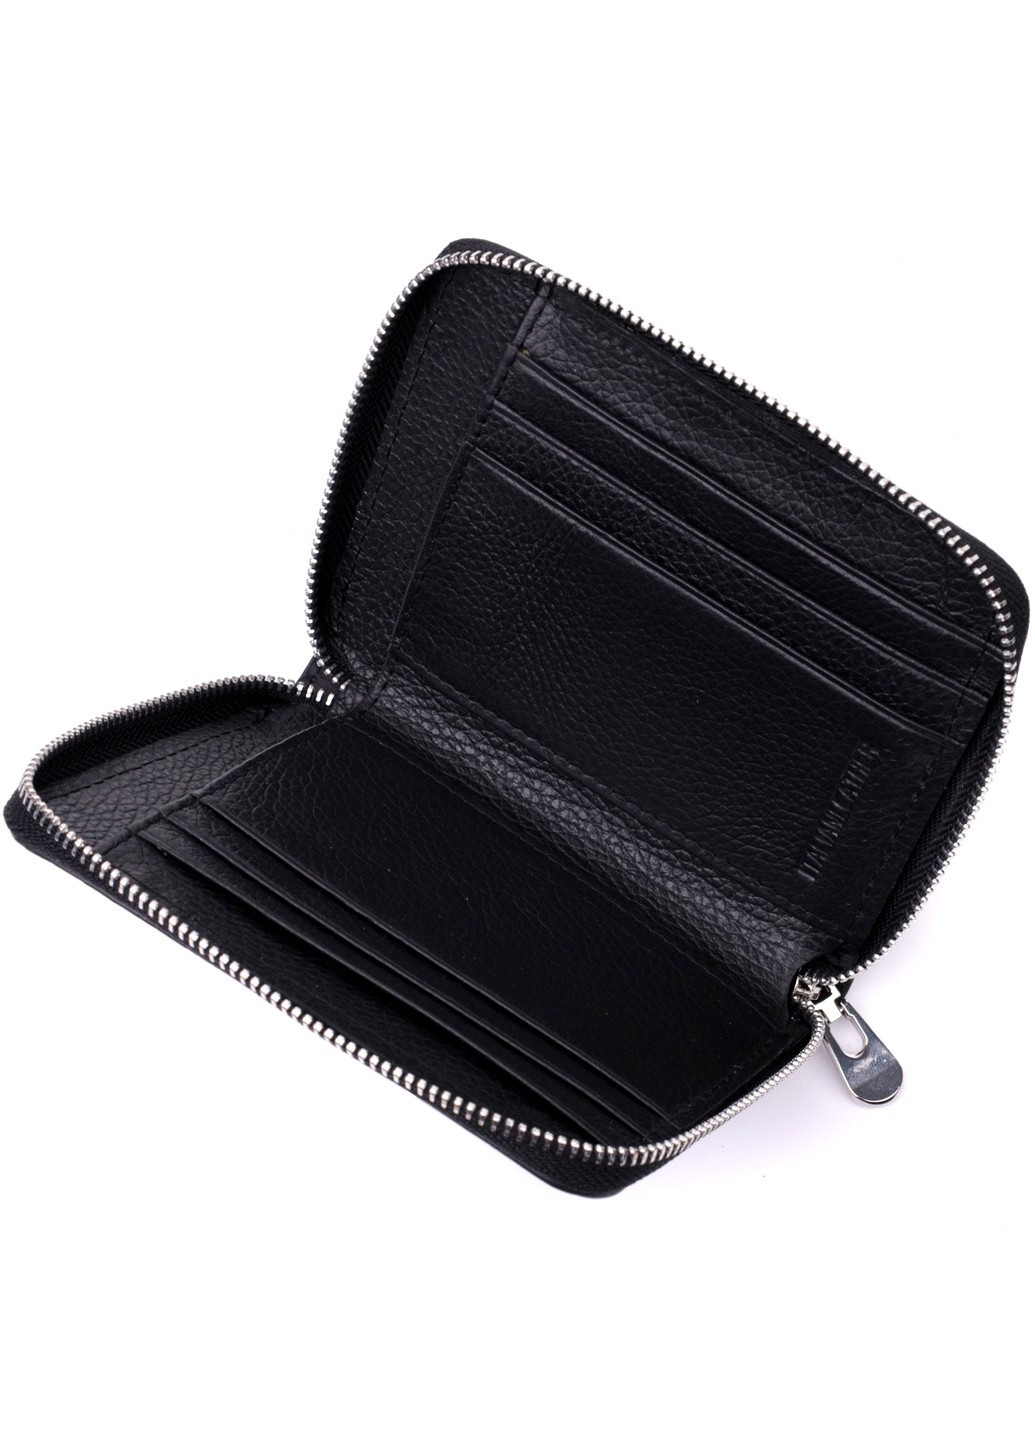 Кожаный кошелек для женщин на молнии с тисненым логотипом производителя 19489 Черный st leather (277980470)